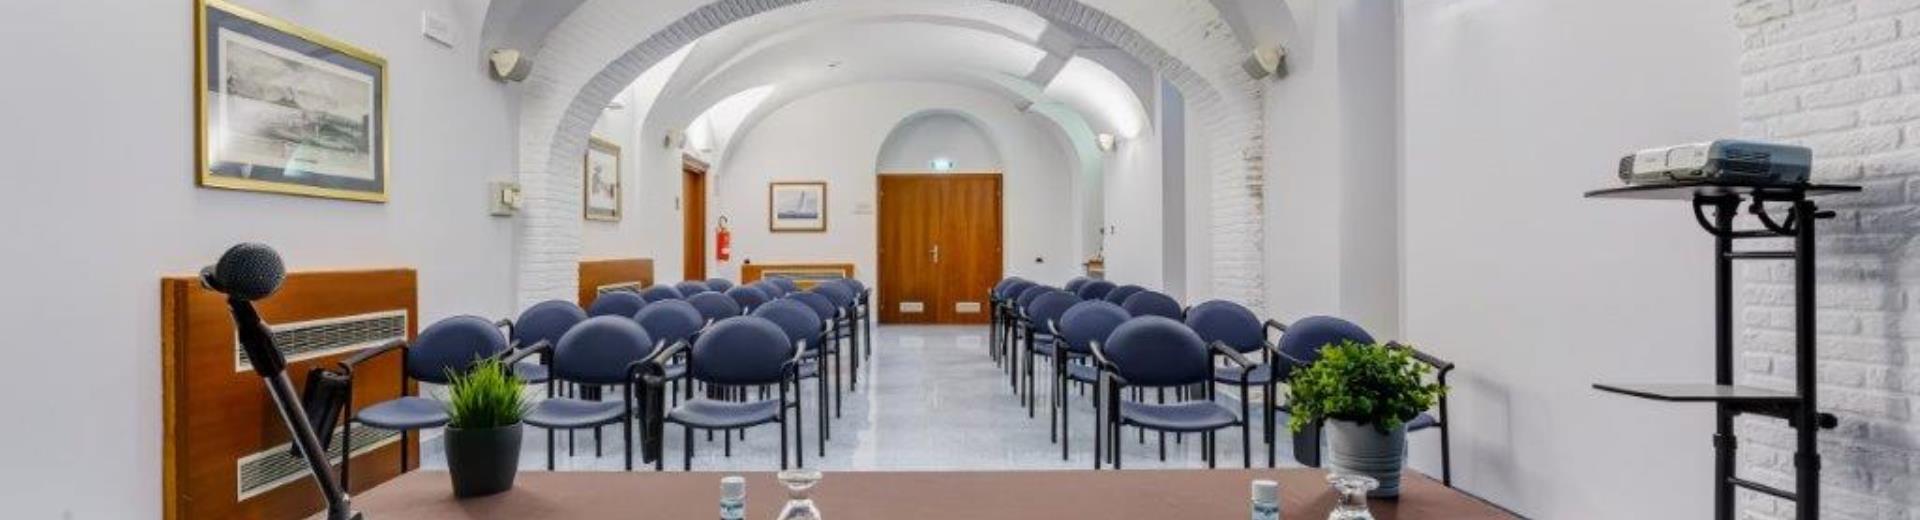 La salle de réunion Principe peut accueillir jusqu’à 60 personnes